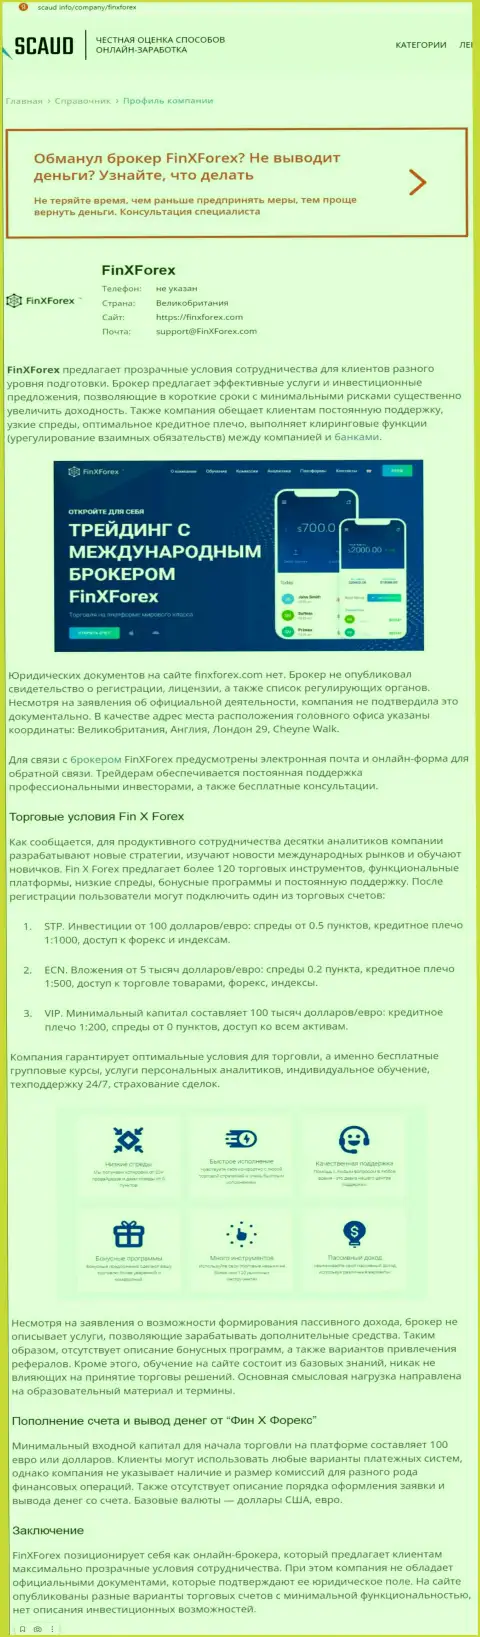 Обзорная статья с явными подтверждениями обмана со стороны FinXForex Com